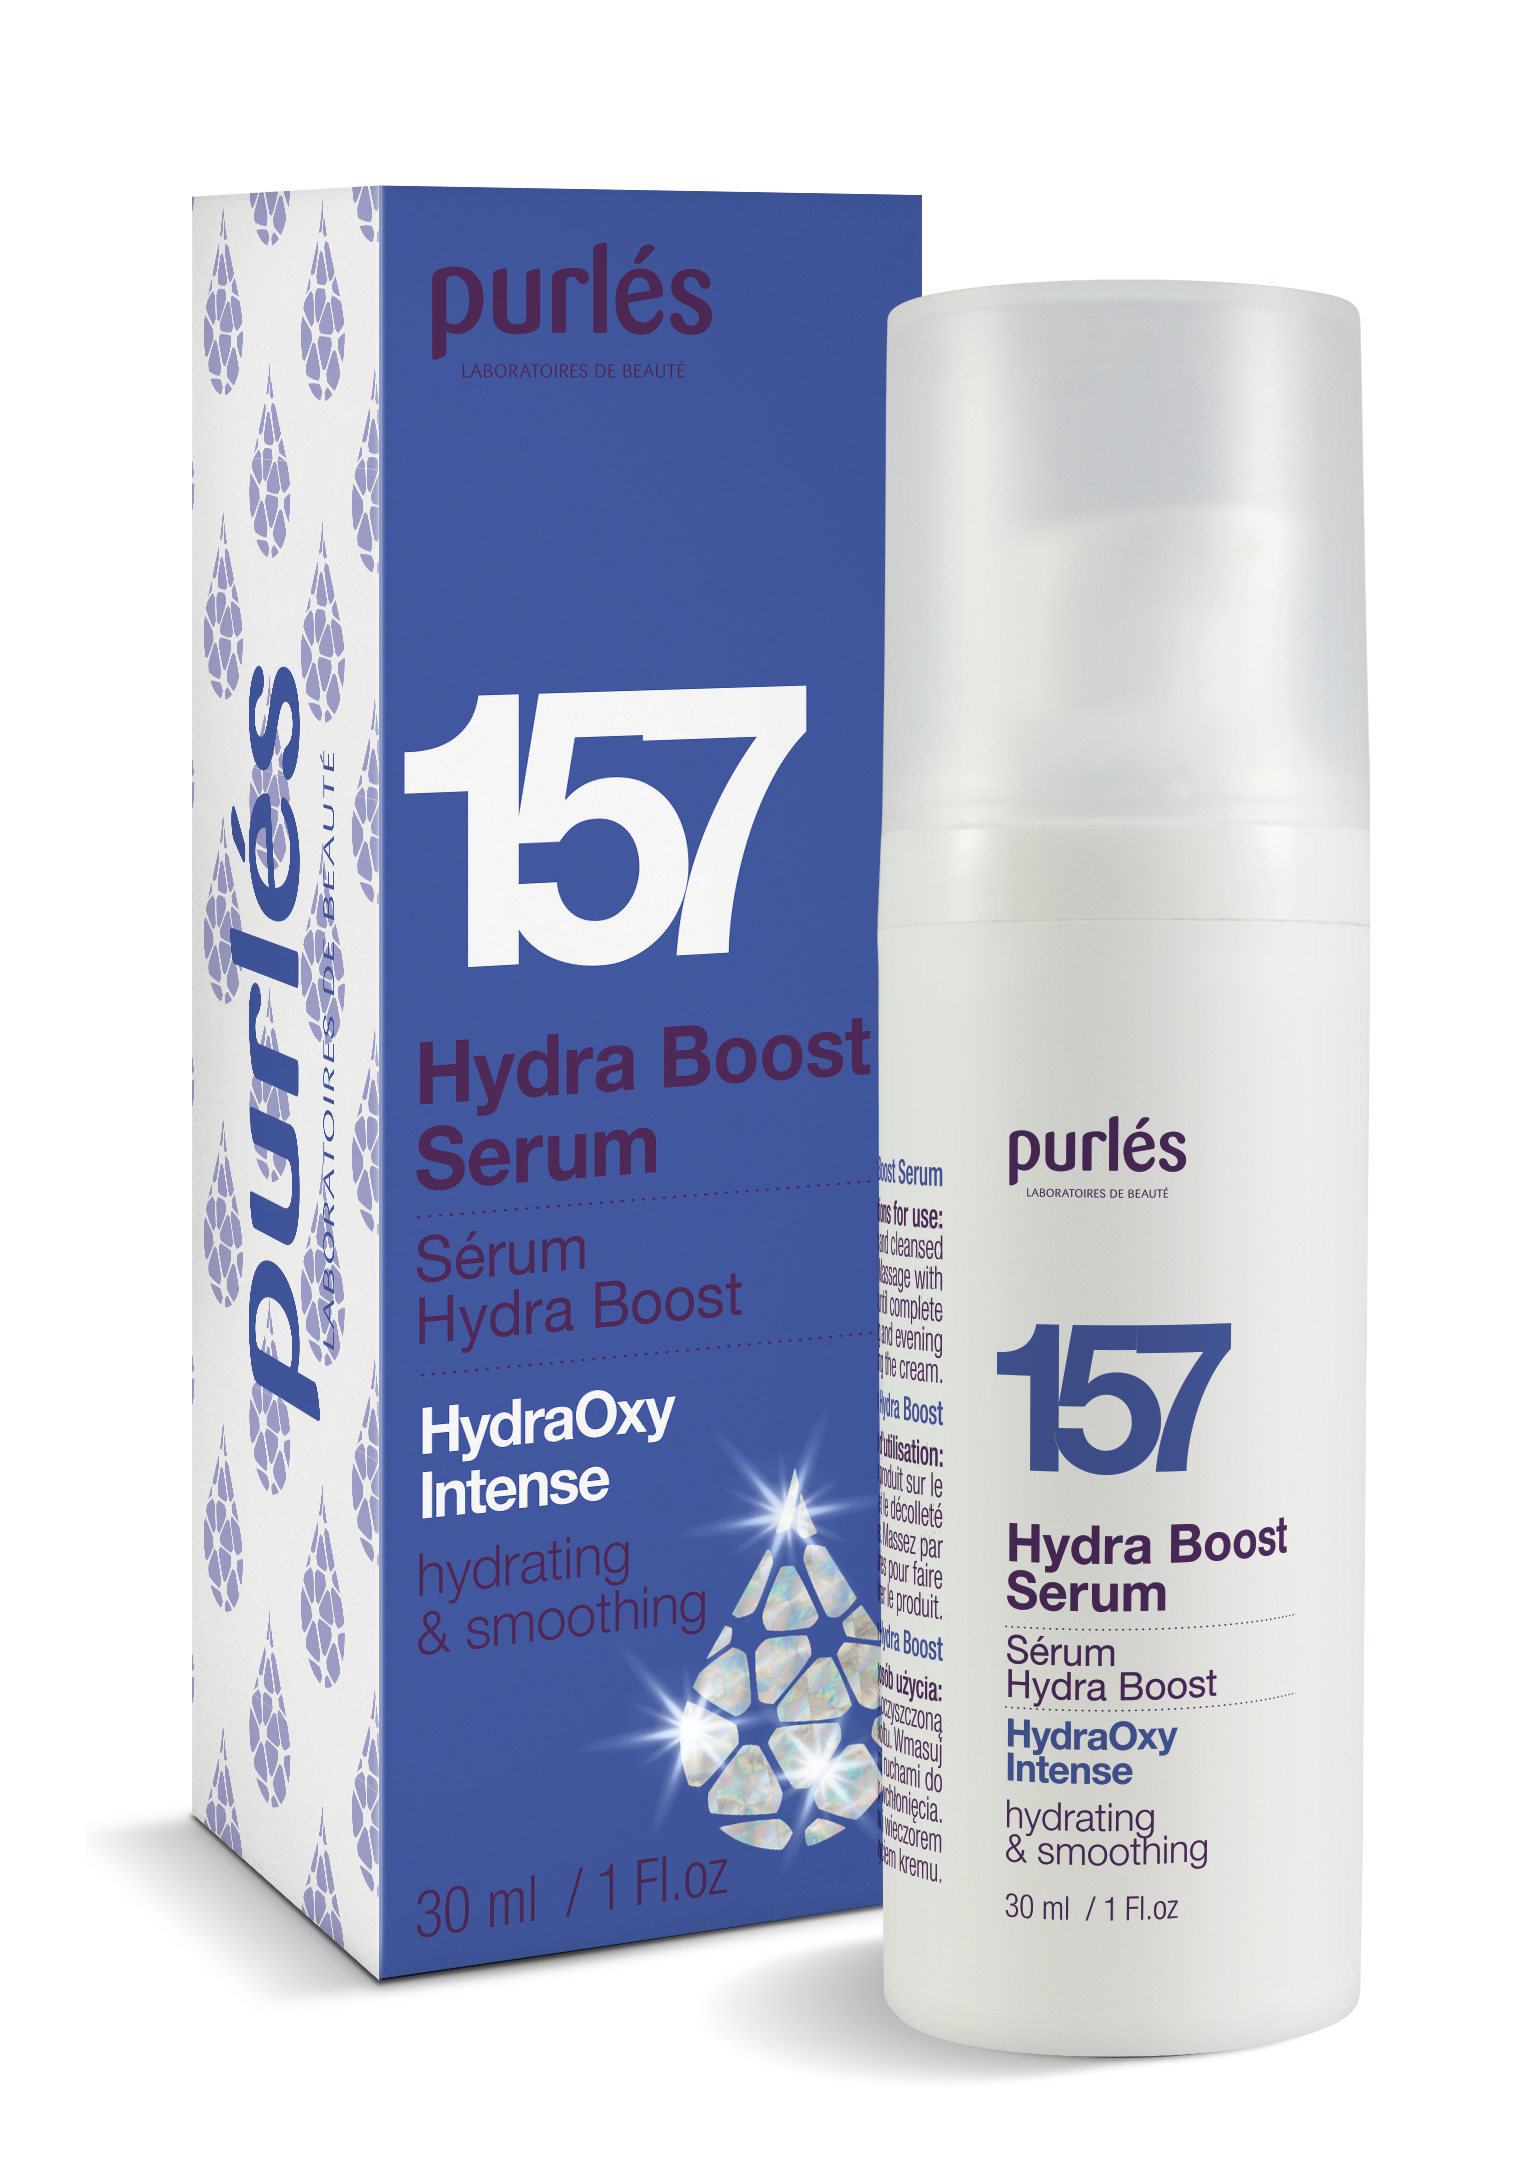 157 Hydra Boost Serum